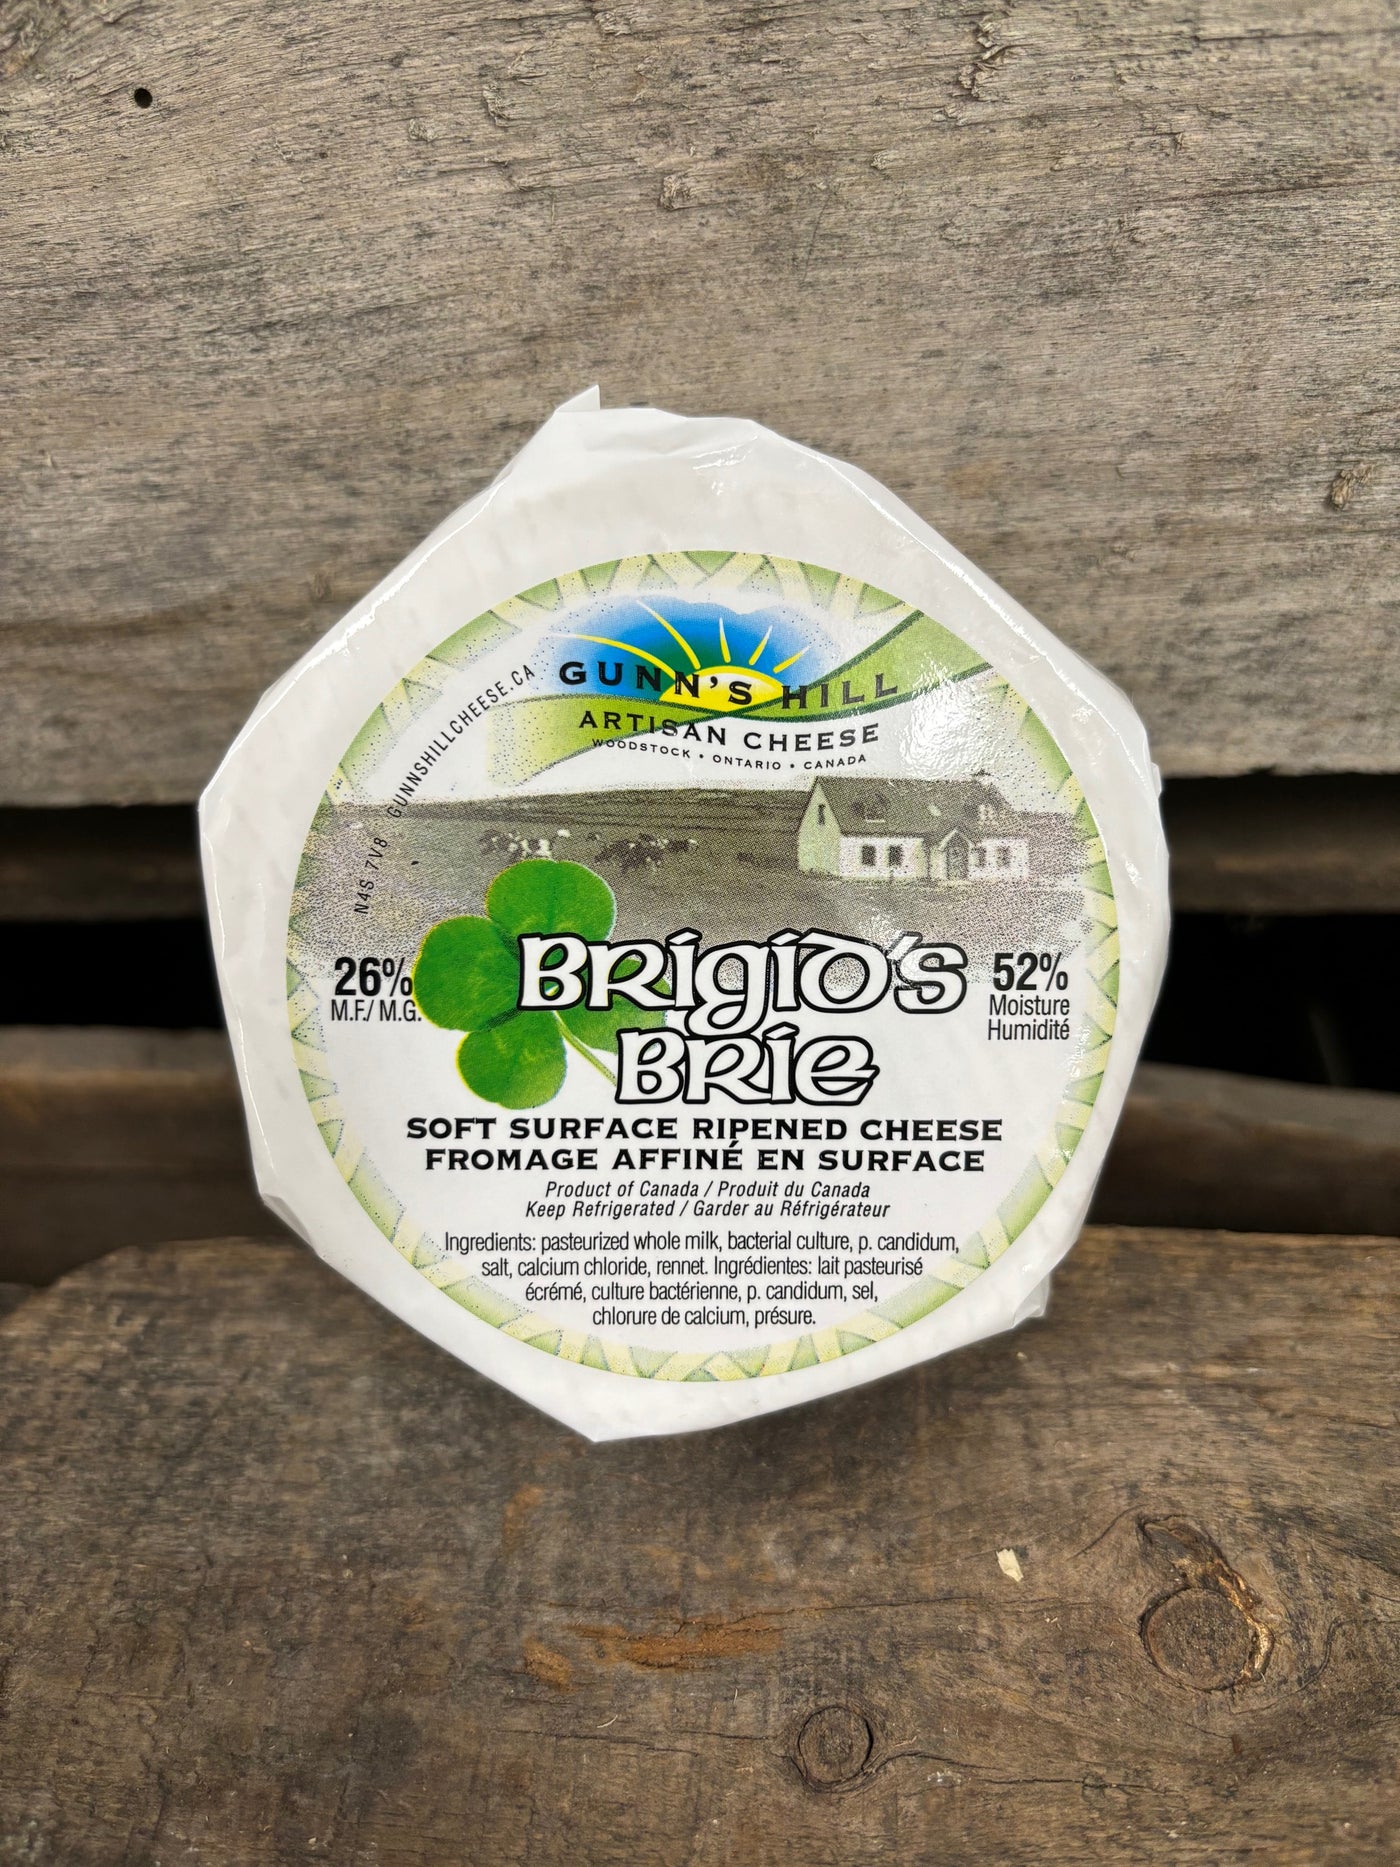 Brigid's Brie